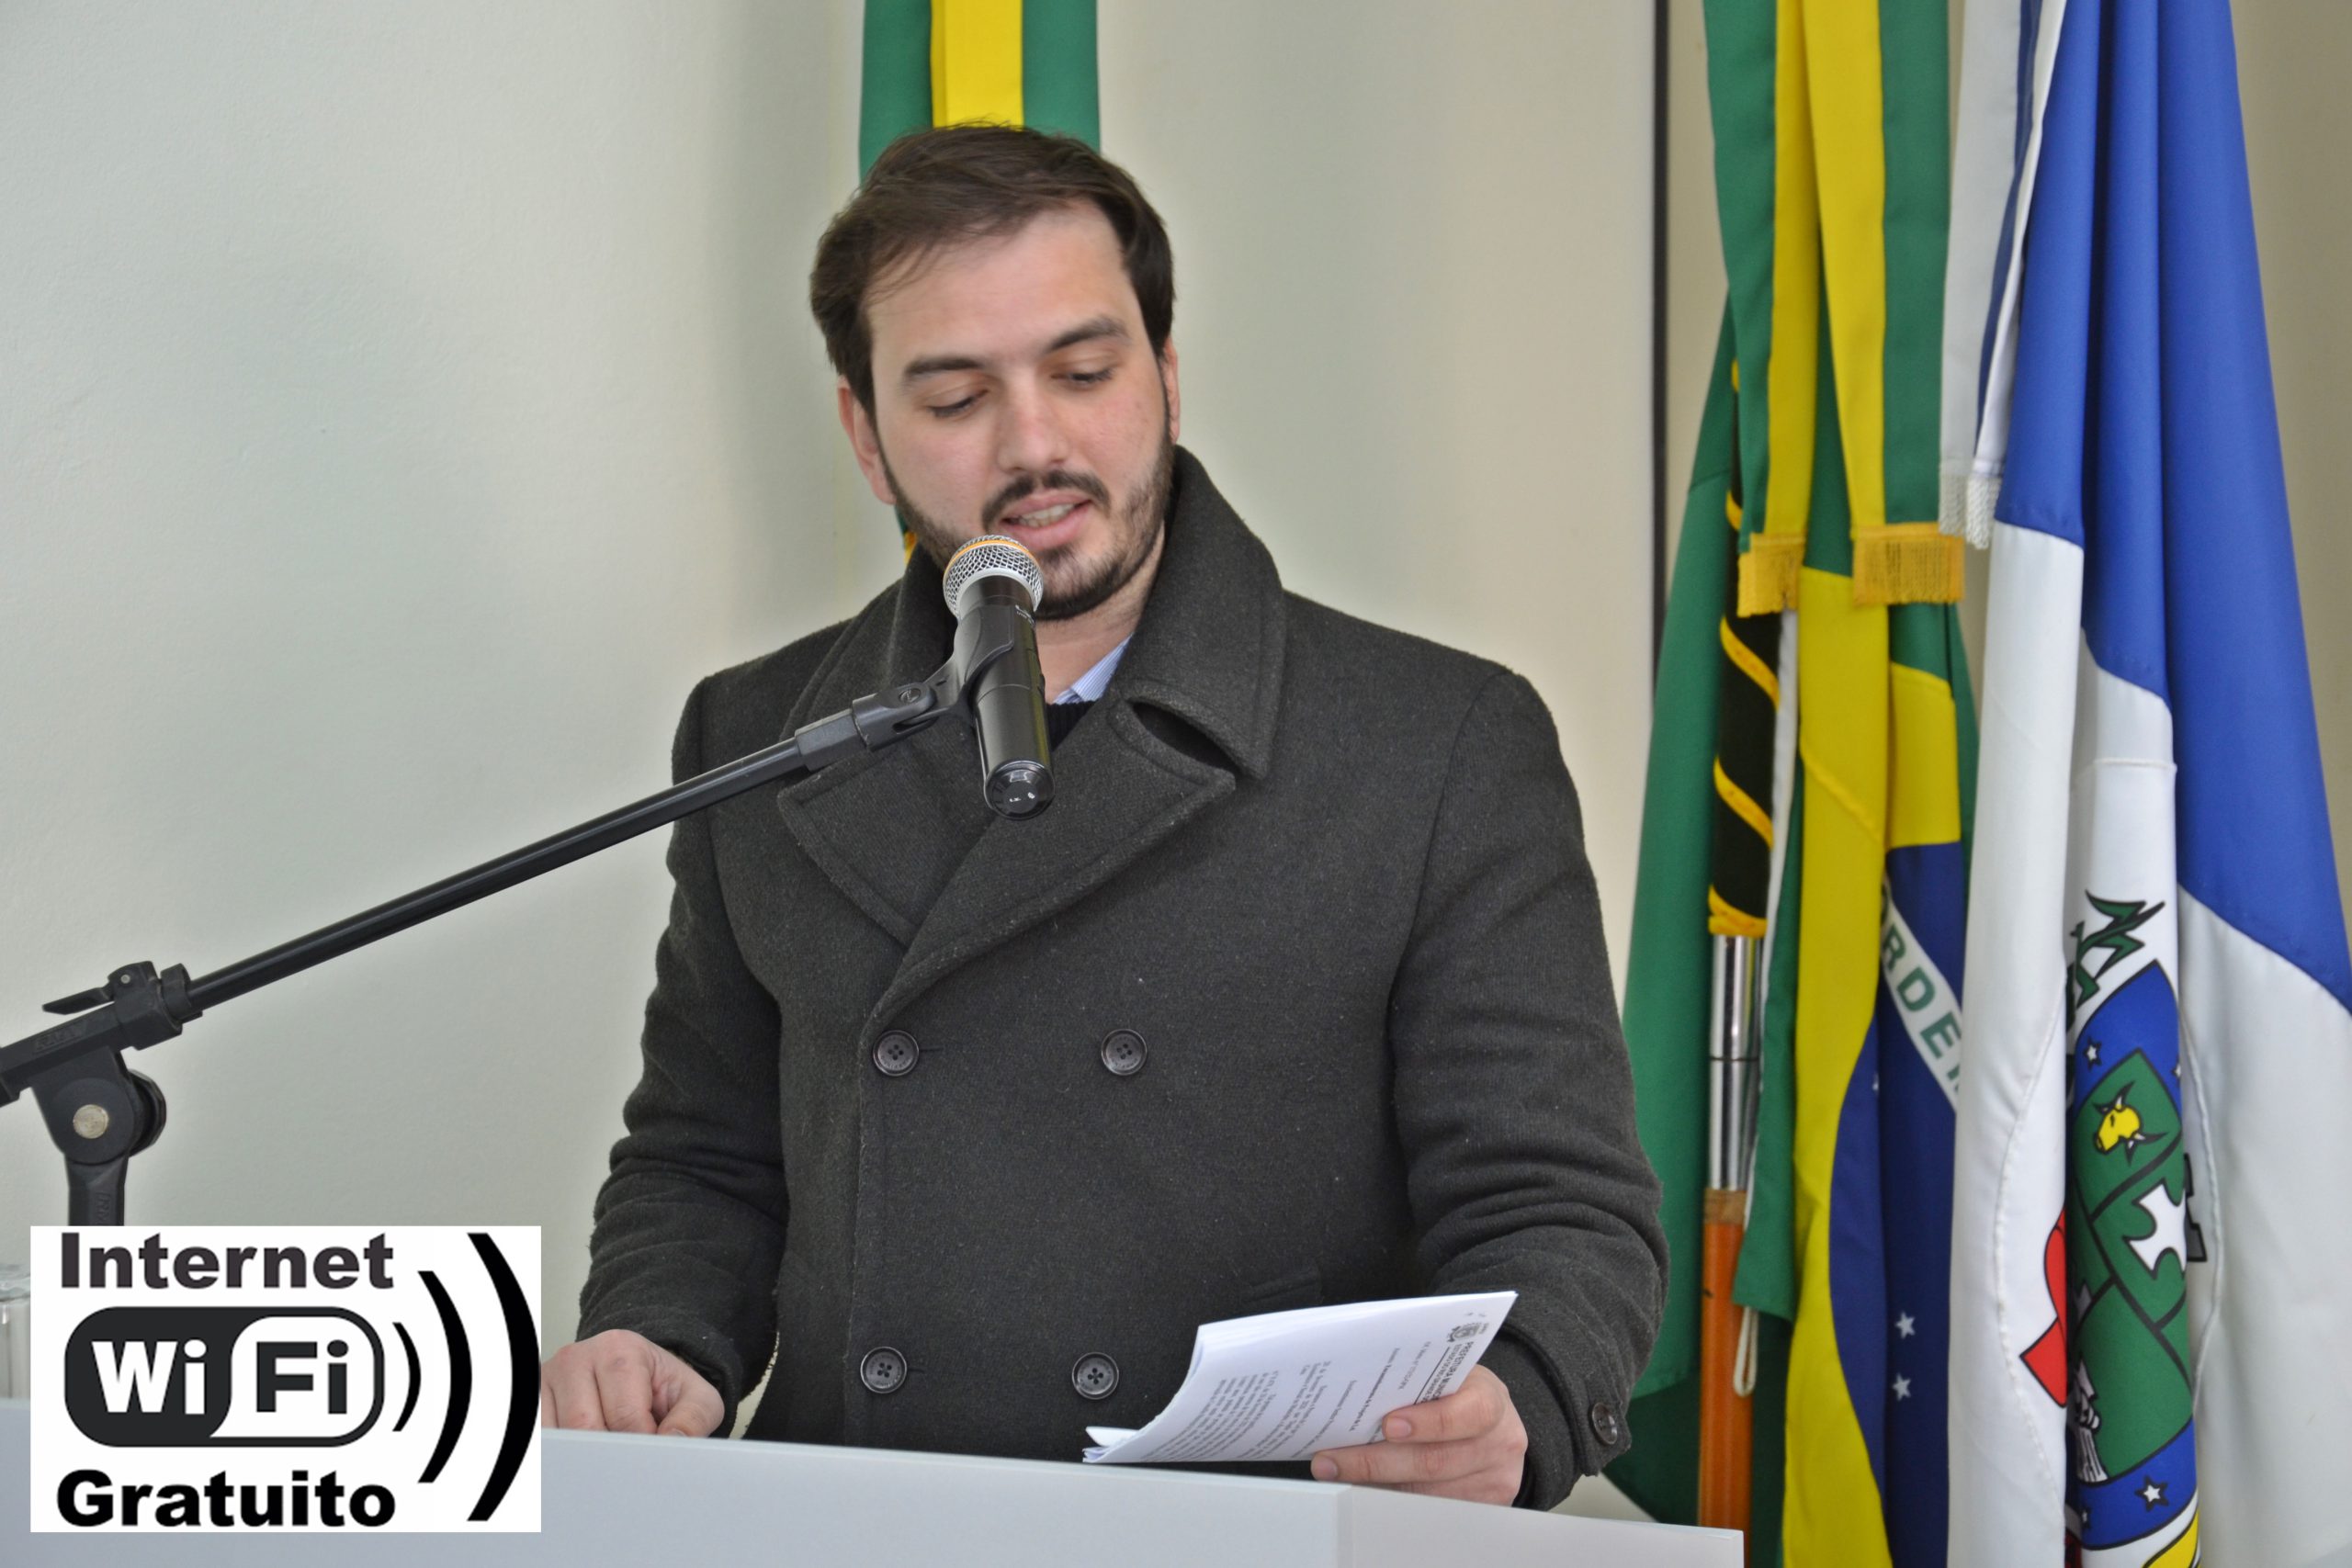 Ricardo propõe um programa de internet móvel nas praças e pontos turísticos do município